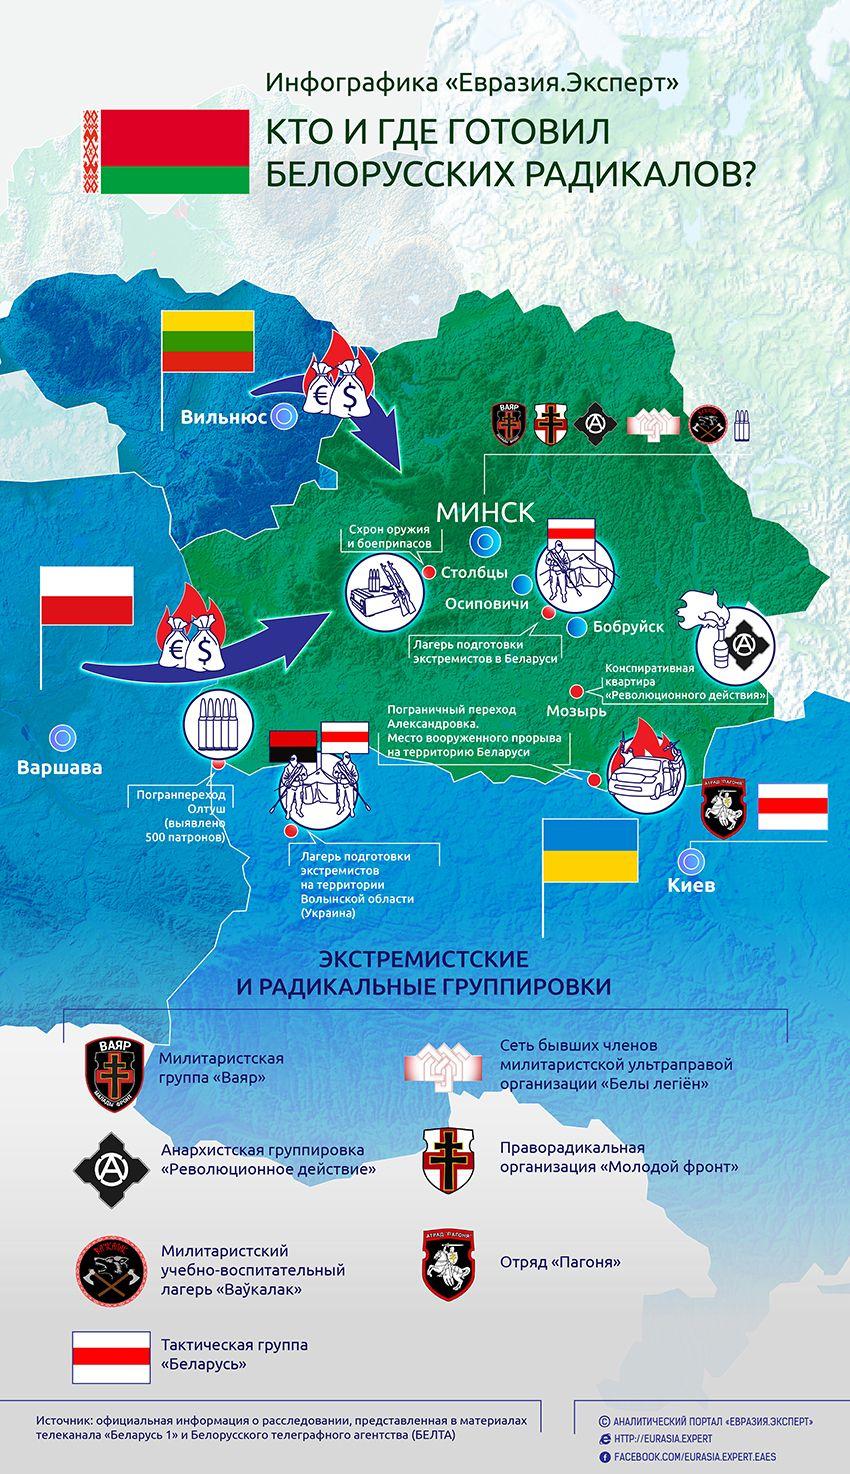 Инфографика: Кто и где готовил белорусских радикалов?